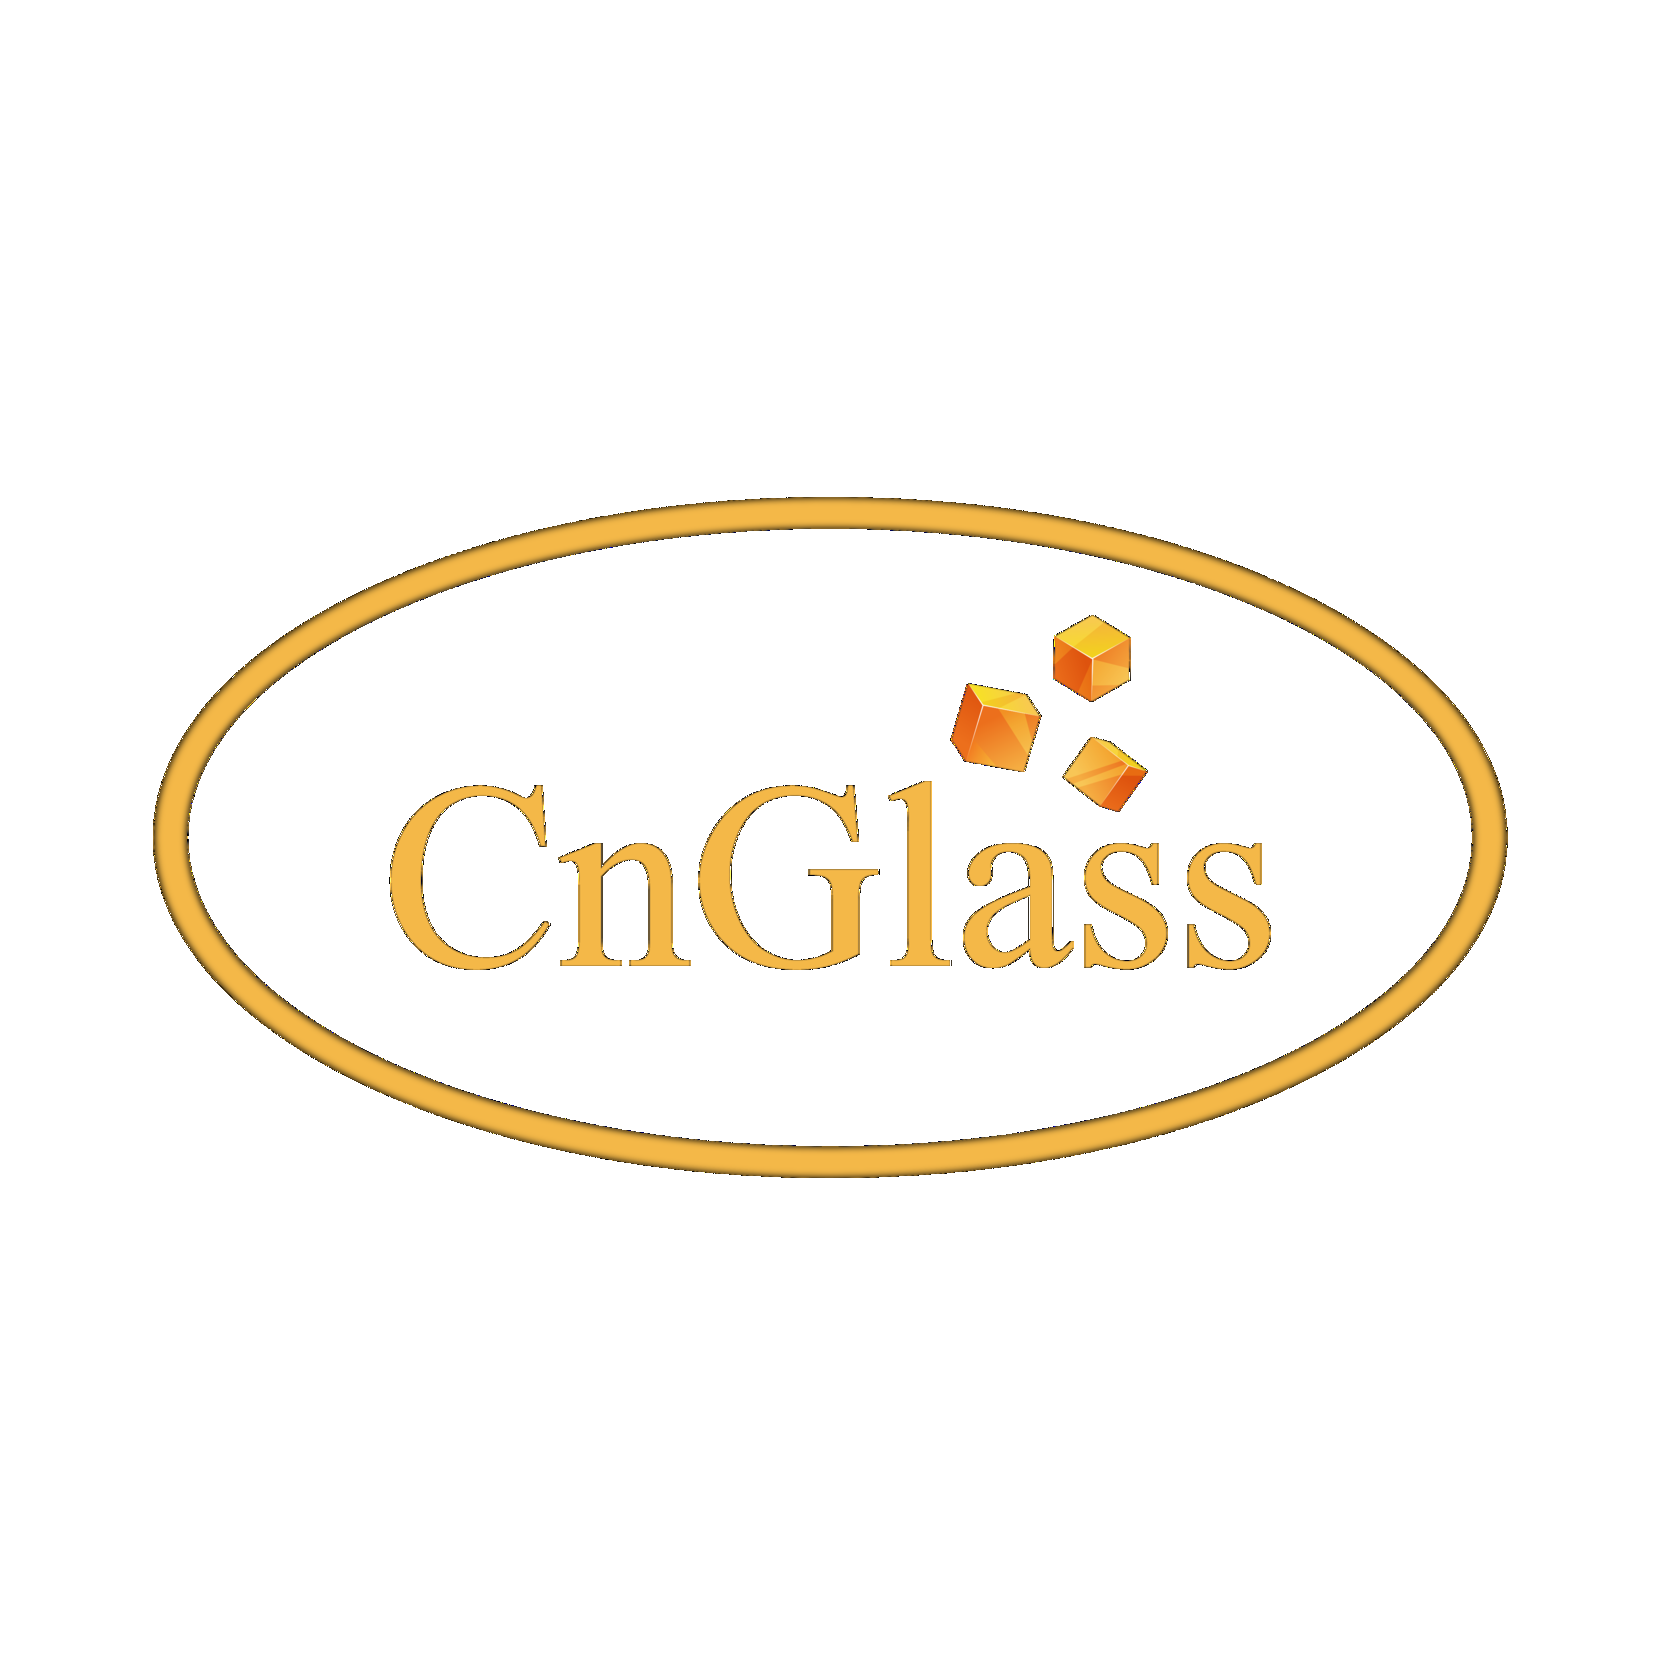 CnGlass